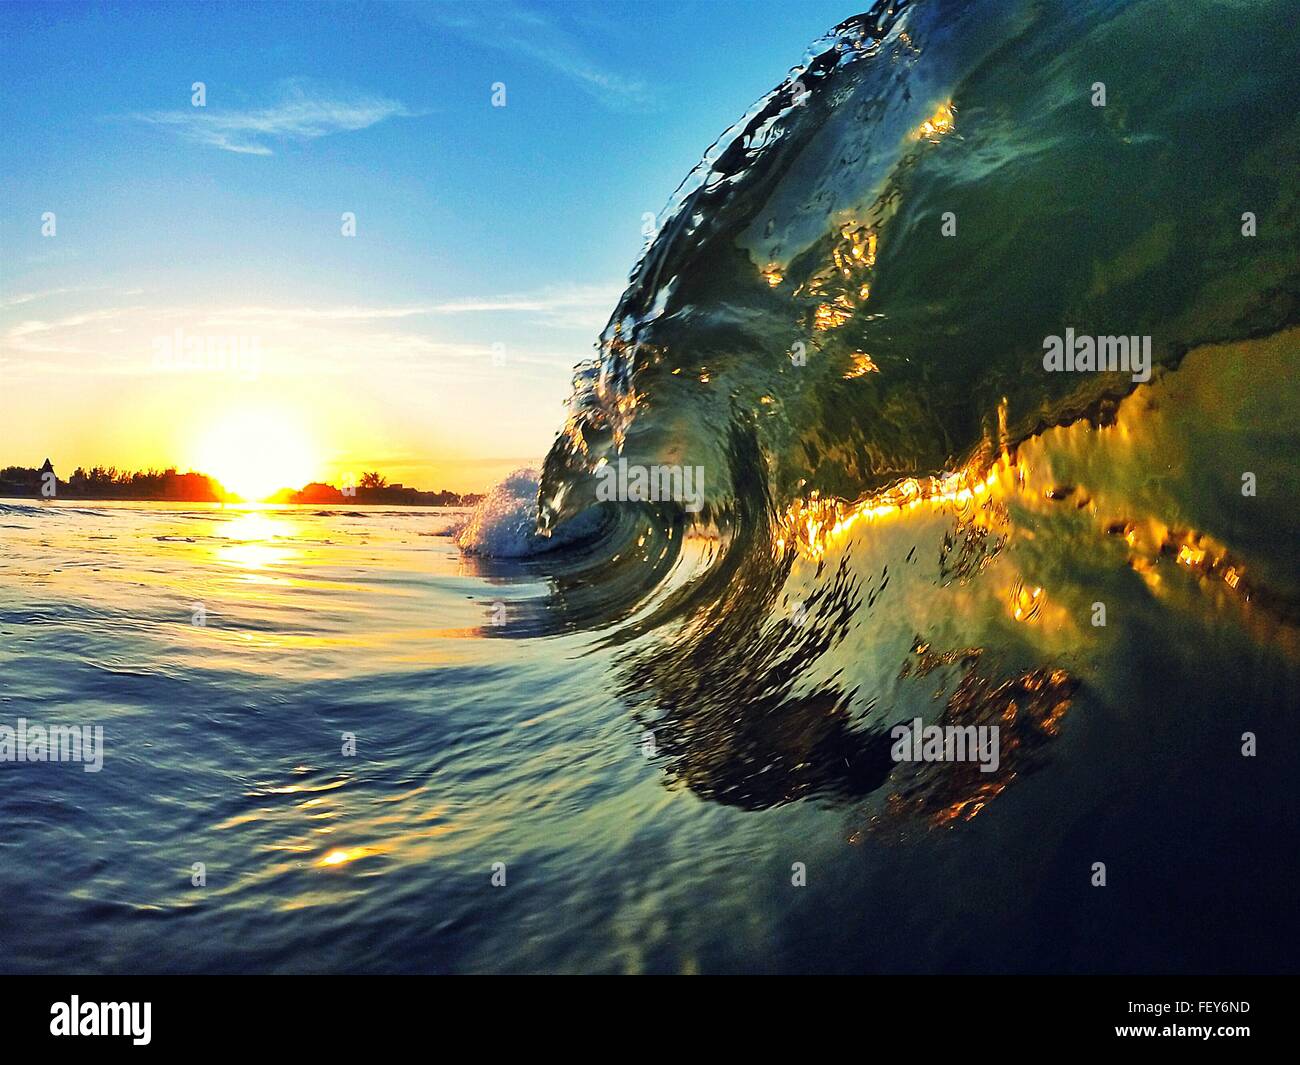 La reflexión de la persona surf en ola de agua Foto de stock